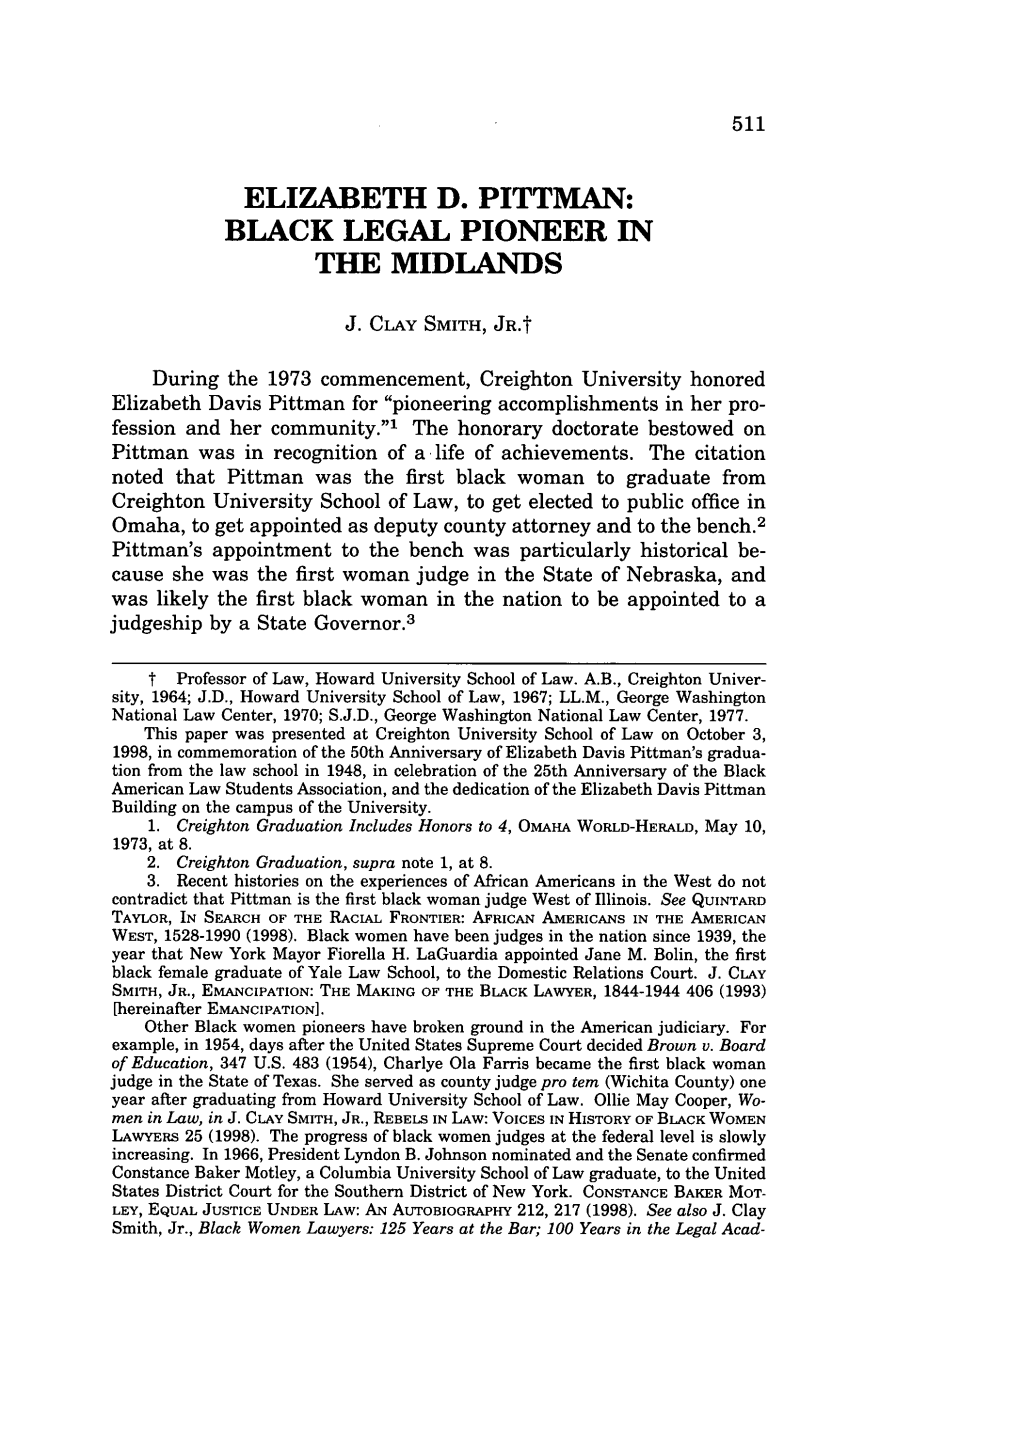 Elizabeth D. Pittman: Black Legal Pioneer in the Midlands